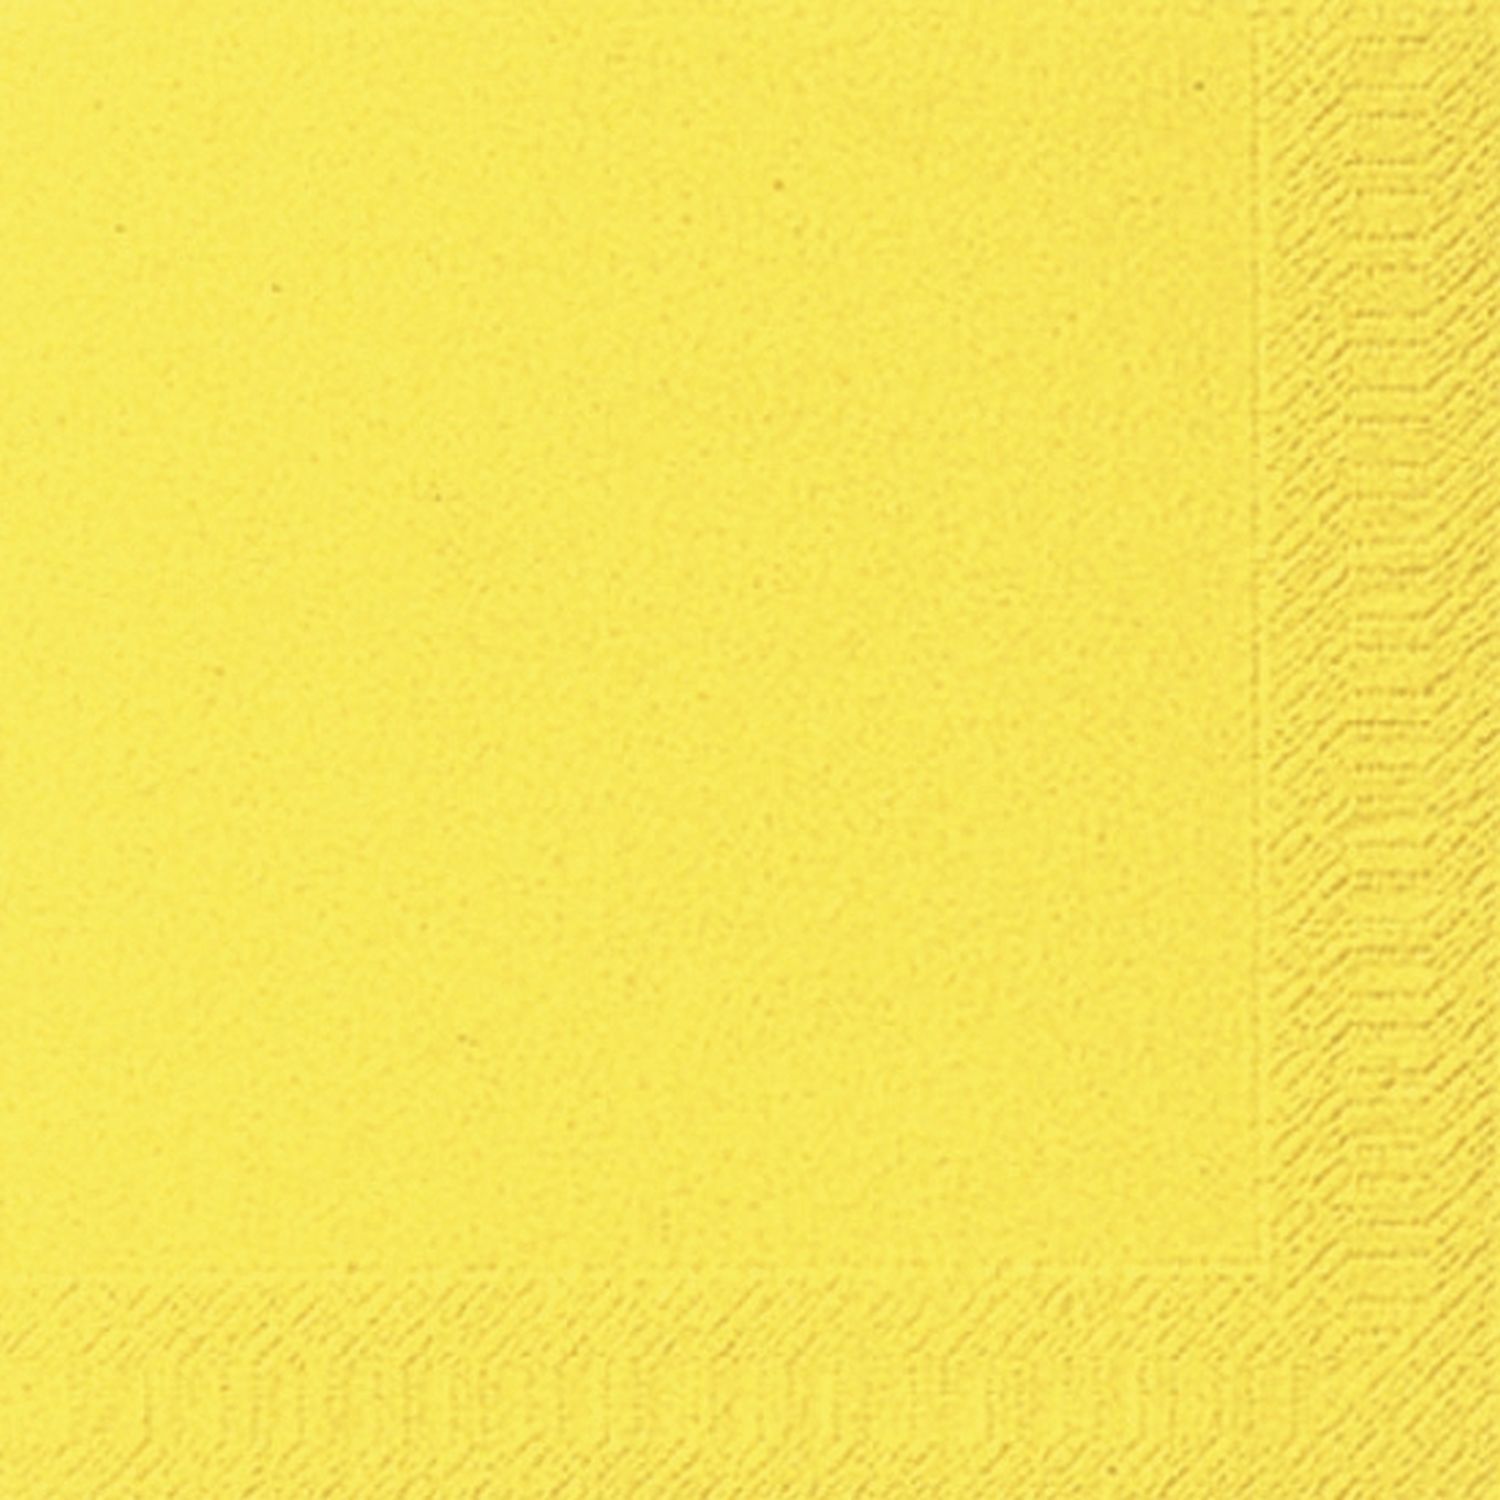 Dinner-Servietten 3lagig Tissue Uni gelb, 40 x 40 cm, 20 Stück